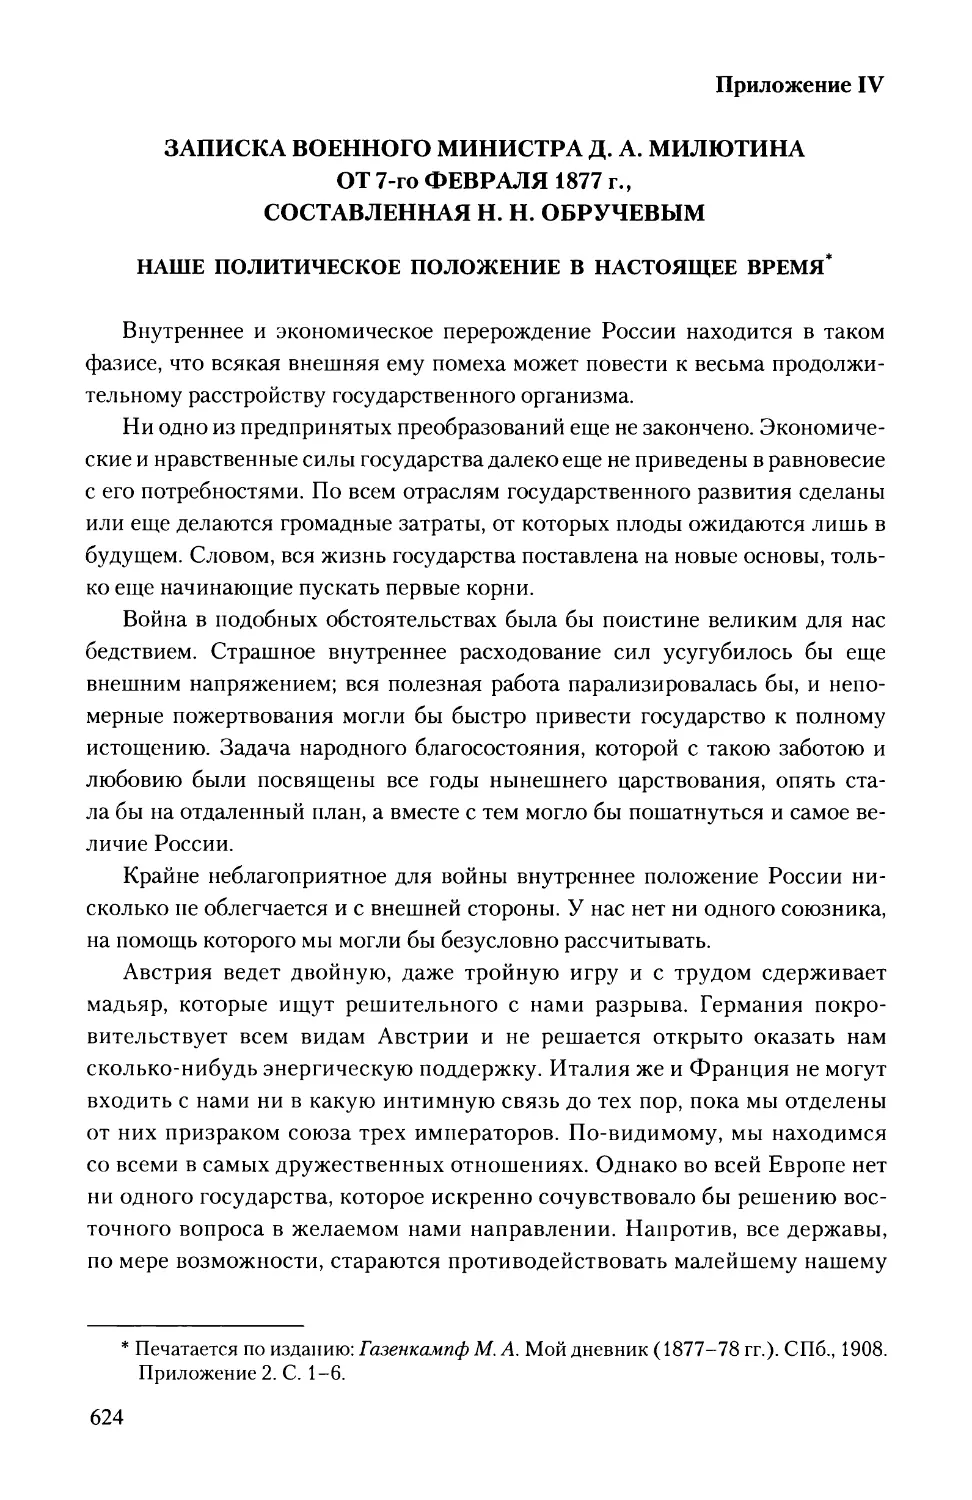 Приложение IV.
Записка военного министра Д.А. Милютина от 7-го февраля 1877 г., составленная Н.Н. Обручевым